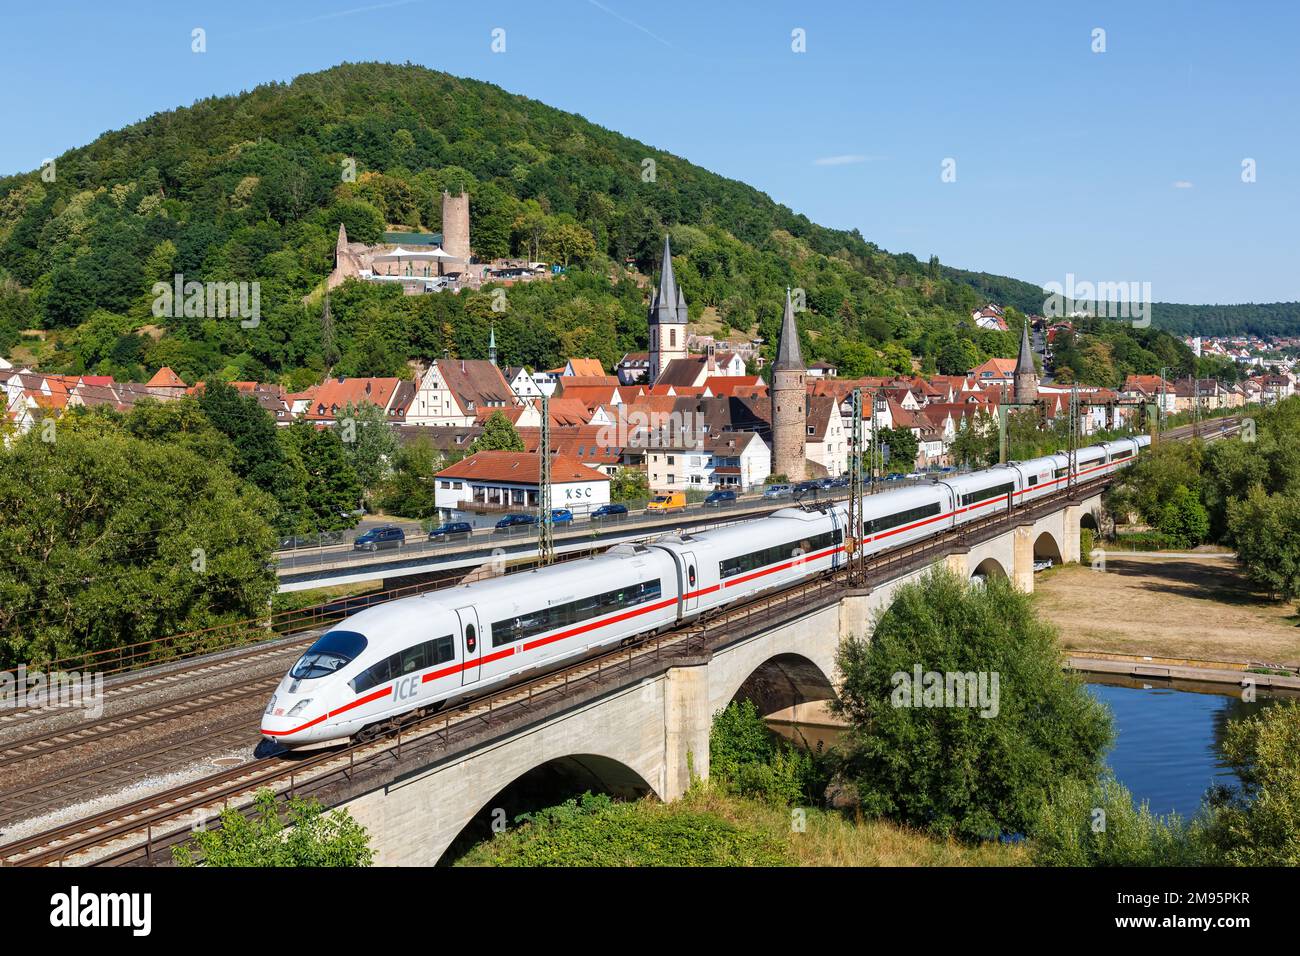 Gemuenden am Main, Germany - August 3, 2022: ICE 3 of Deutsche Bahn DB high-speed train railway in Gemuenden am Main, Germany. Stock Photo